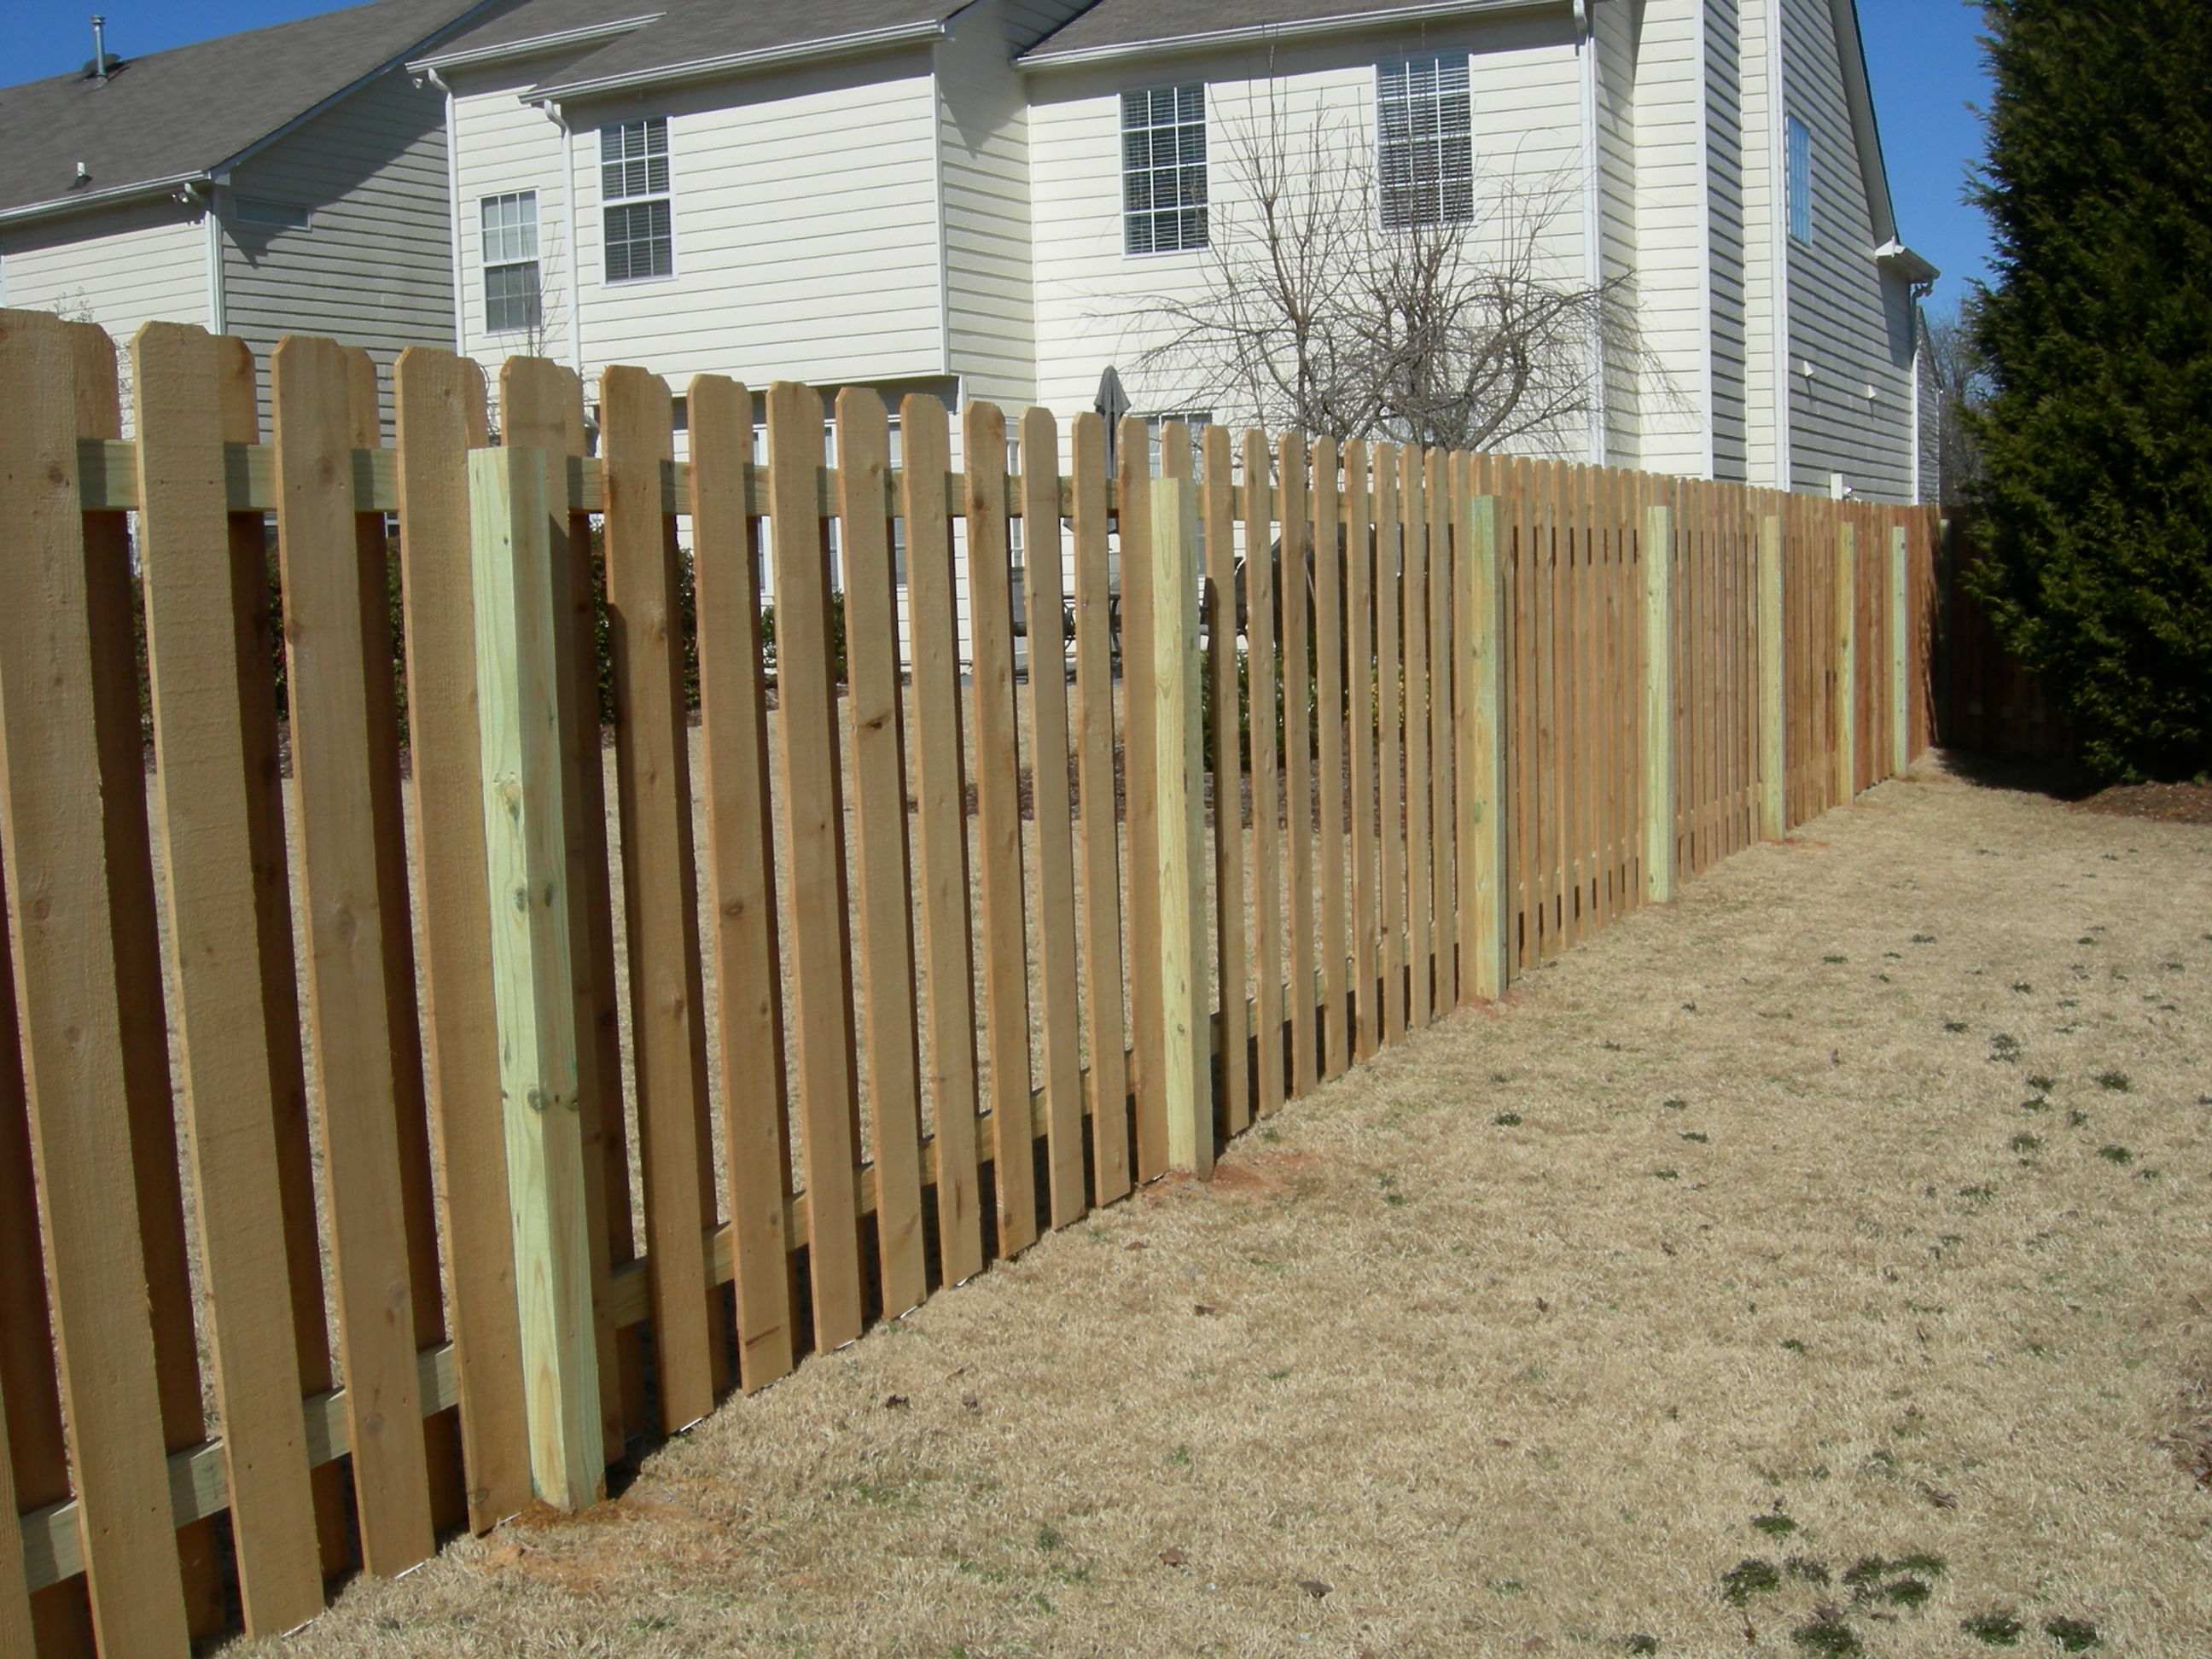 Shadowbox Fence Designs Wooden Plans patio deck plans  monogrubprim